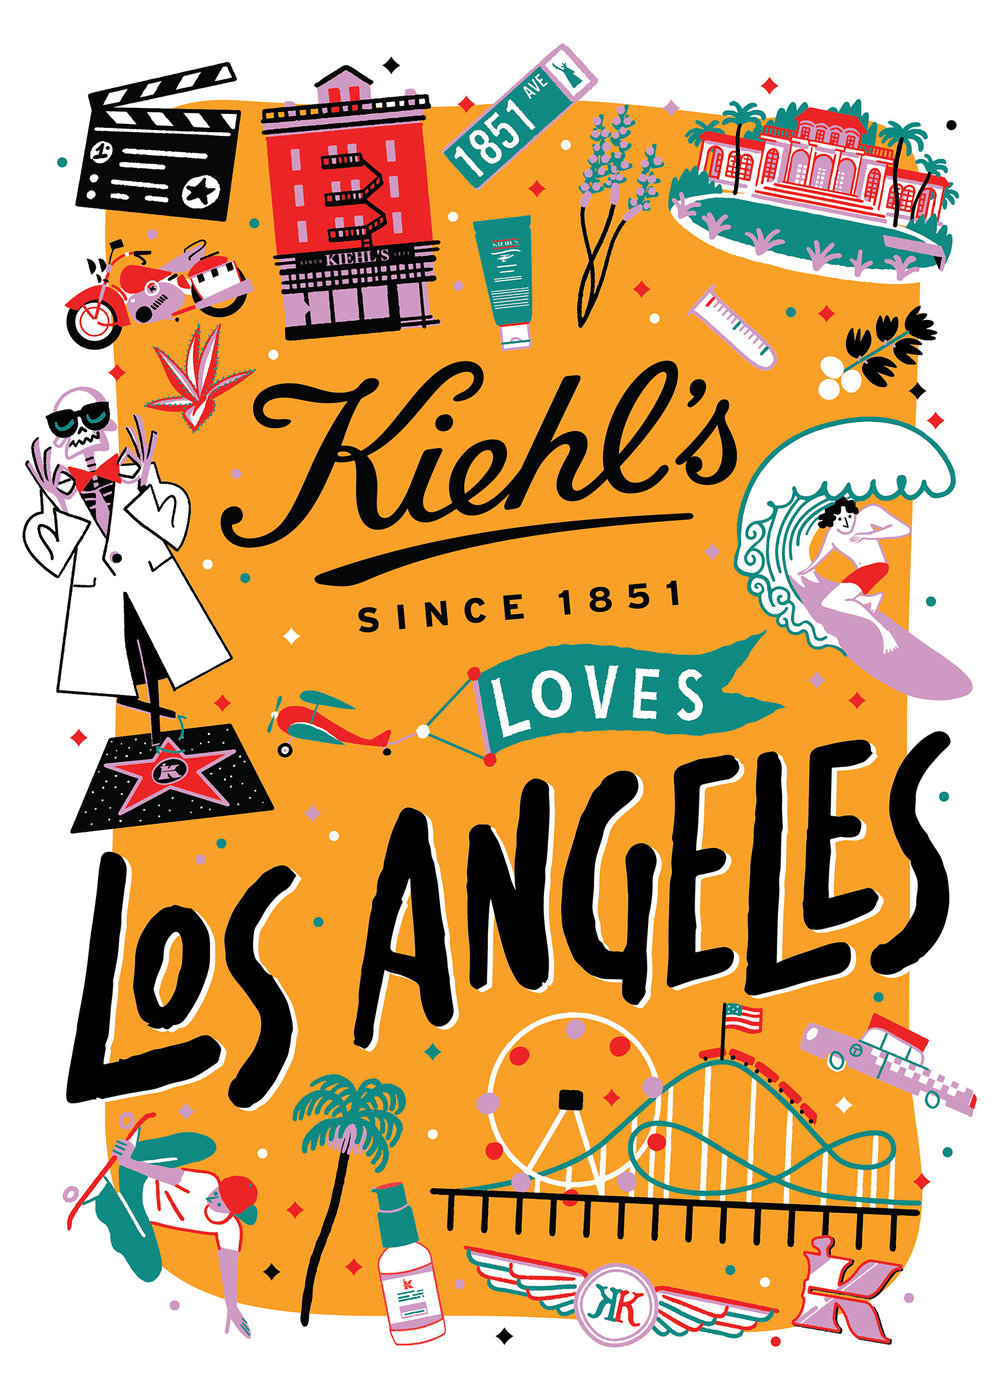 simone-massoni-kiehls-loves-LOS ANGELES.jpg